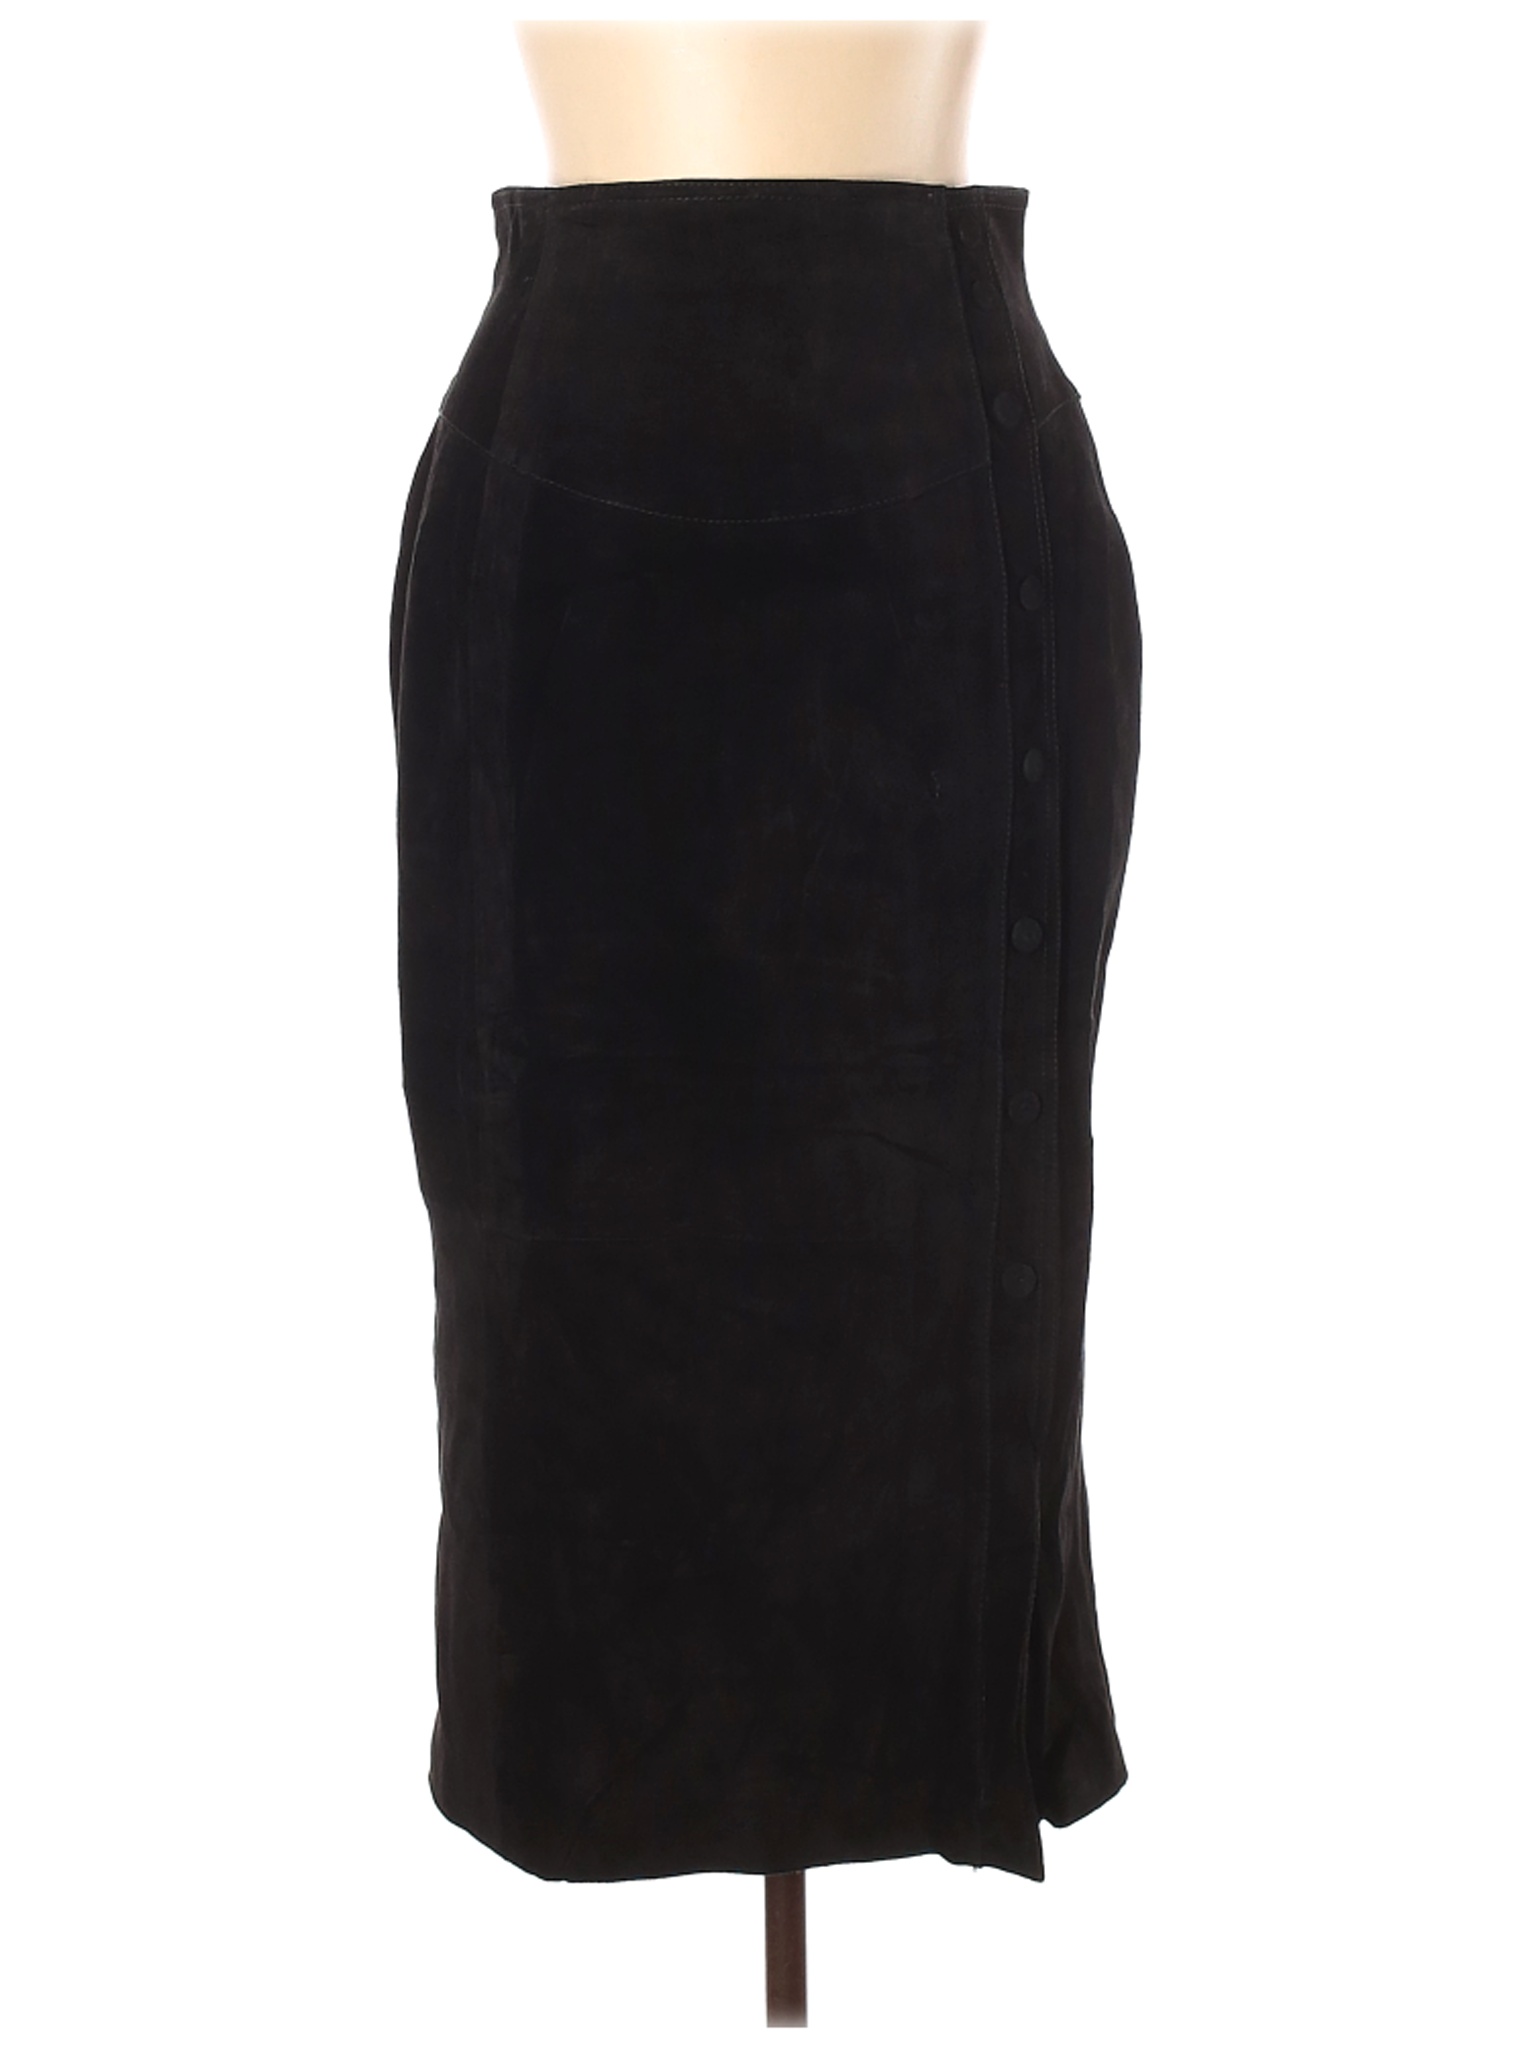 Assorted Brands Women Black Leather Skirt 12 | eBay